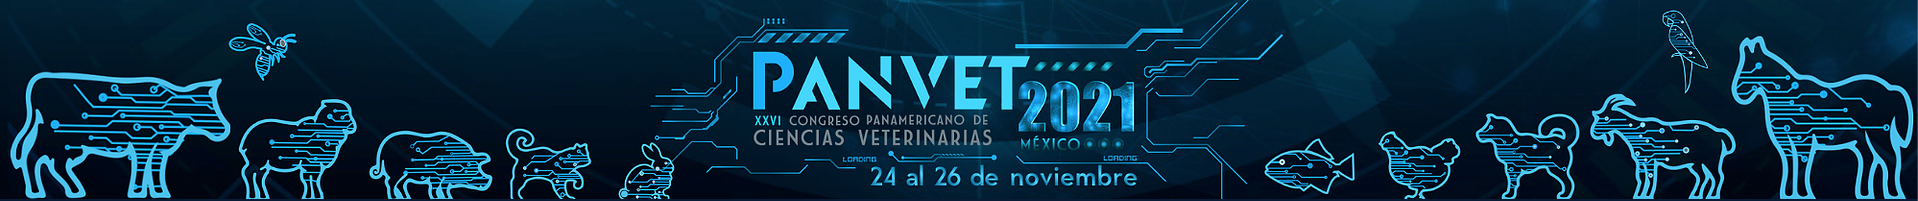 logo_panvet